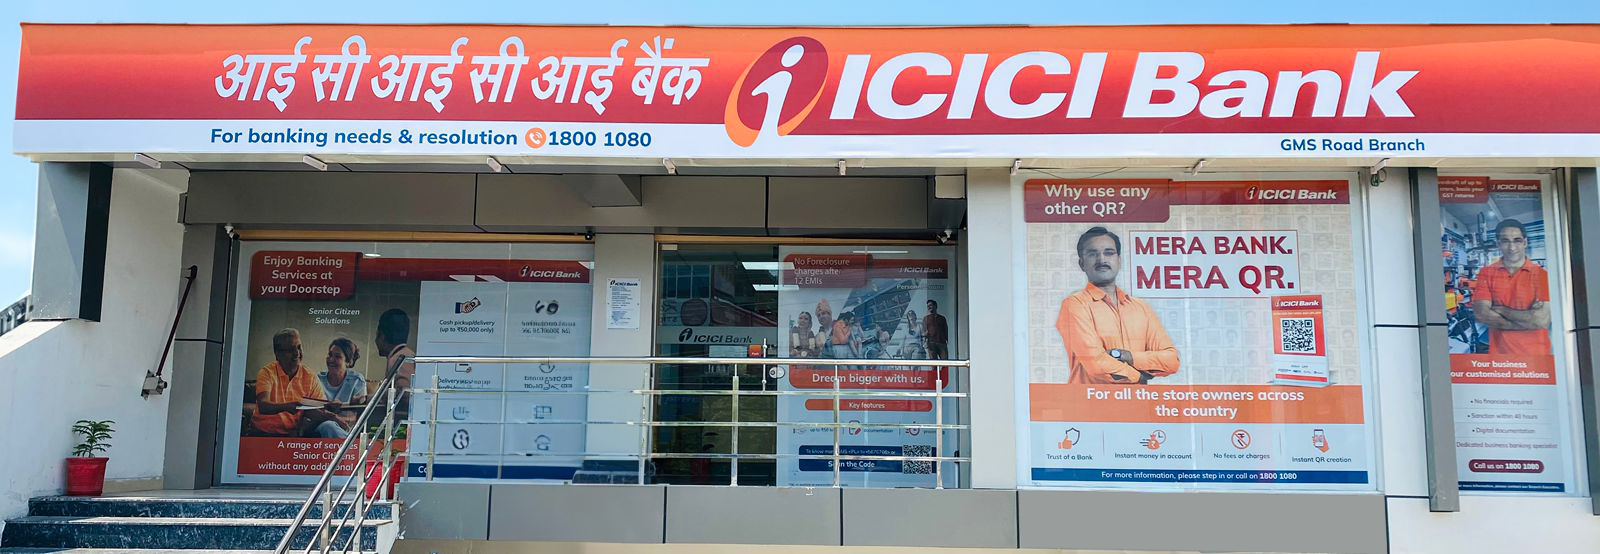 ICICI Bank inaugurates a new branch in Dehradun